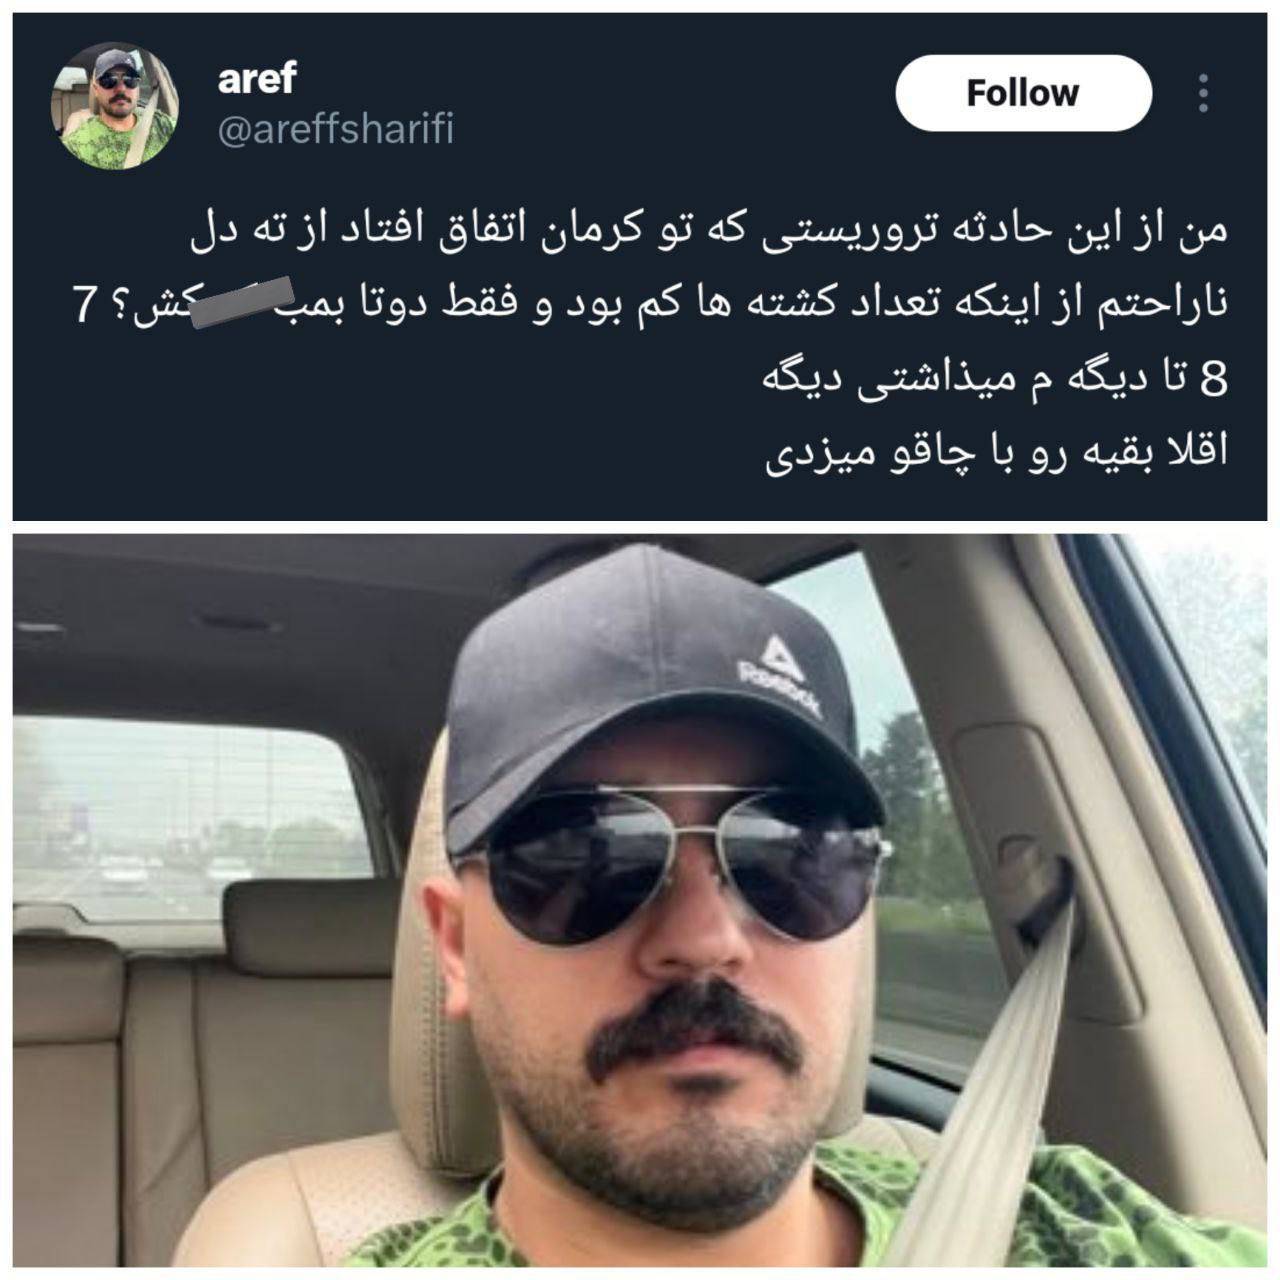 عارف شریفی از ۱۴۰۰ تدریسی در دانشگاه آزاد اسلامی نداشته است